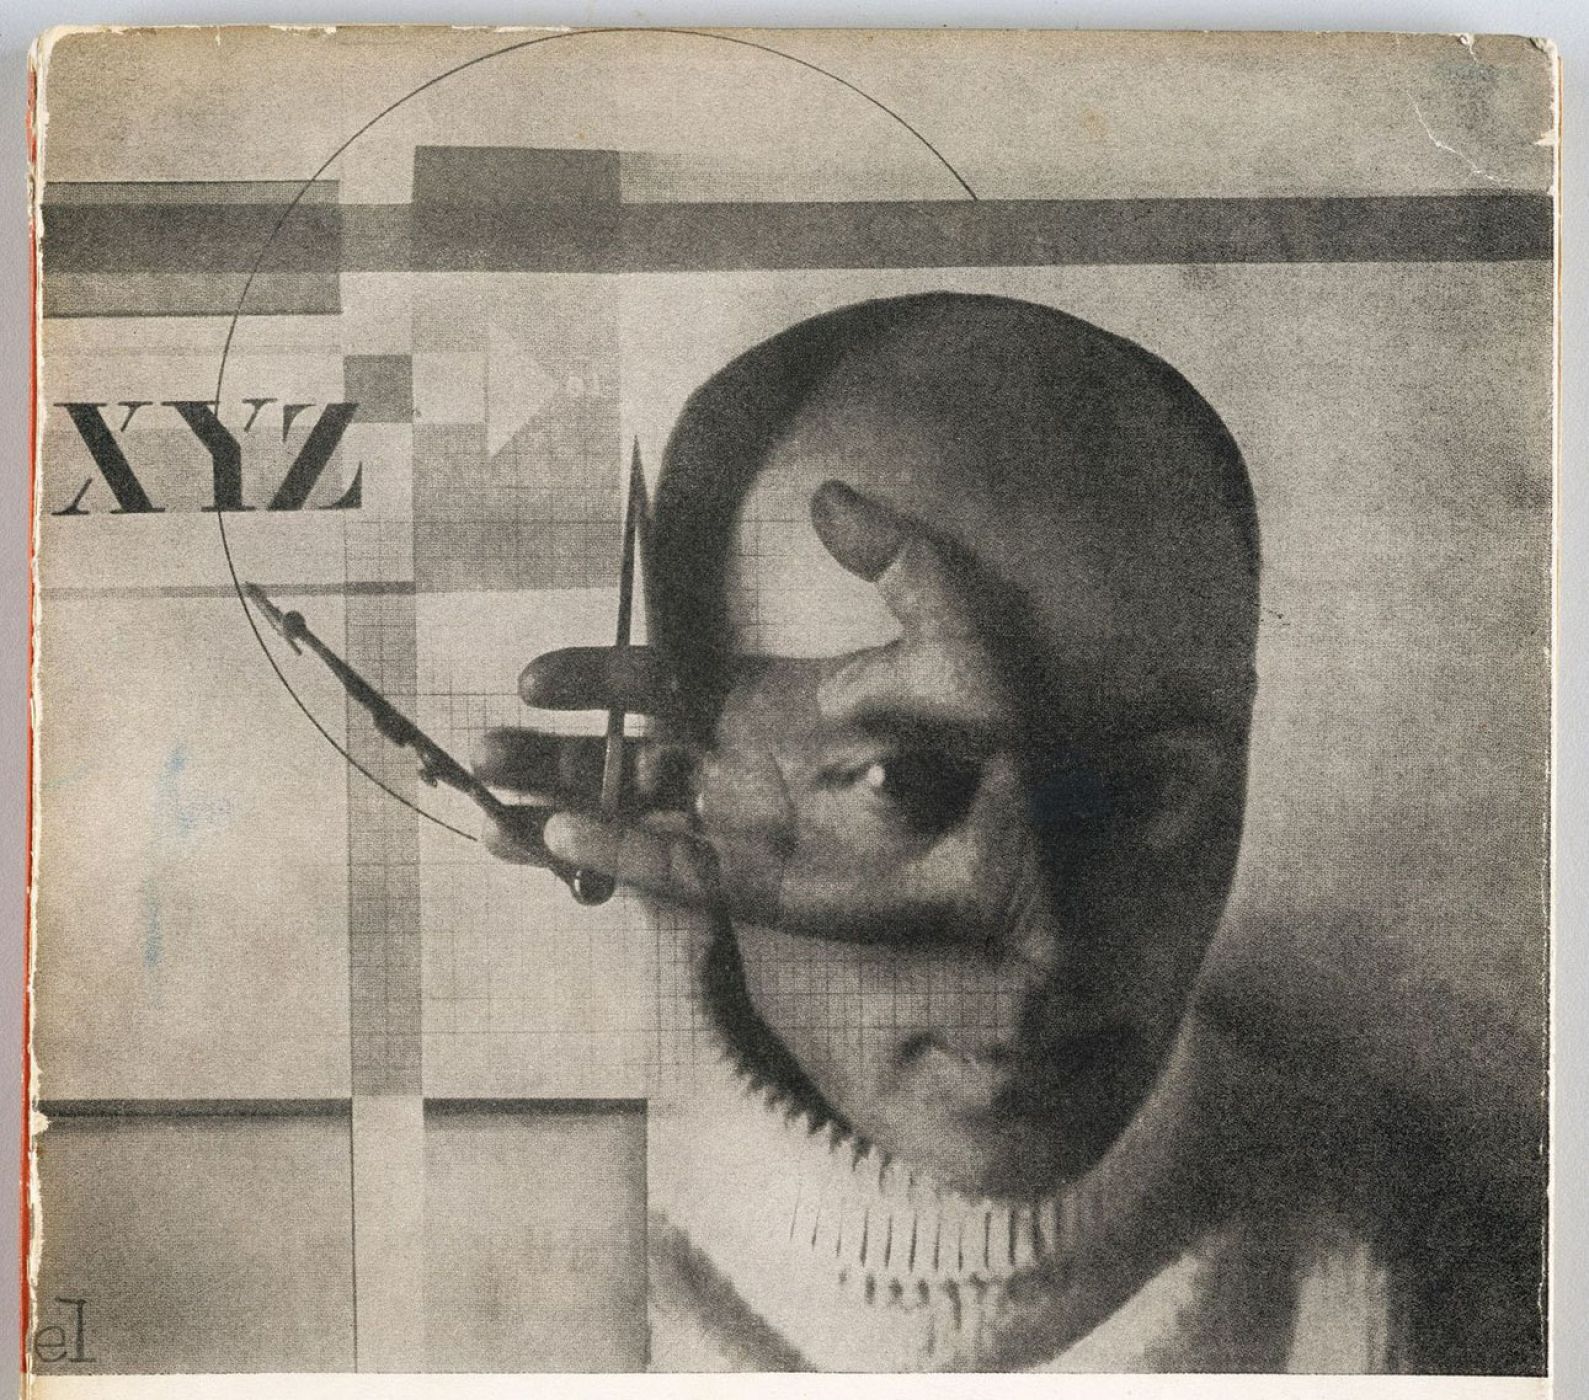 El Lissitzky. "El constructor" -Autorretrato- (1924)